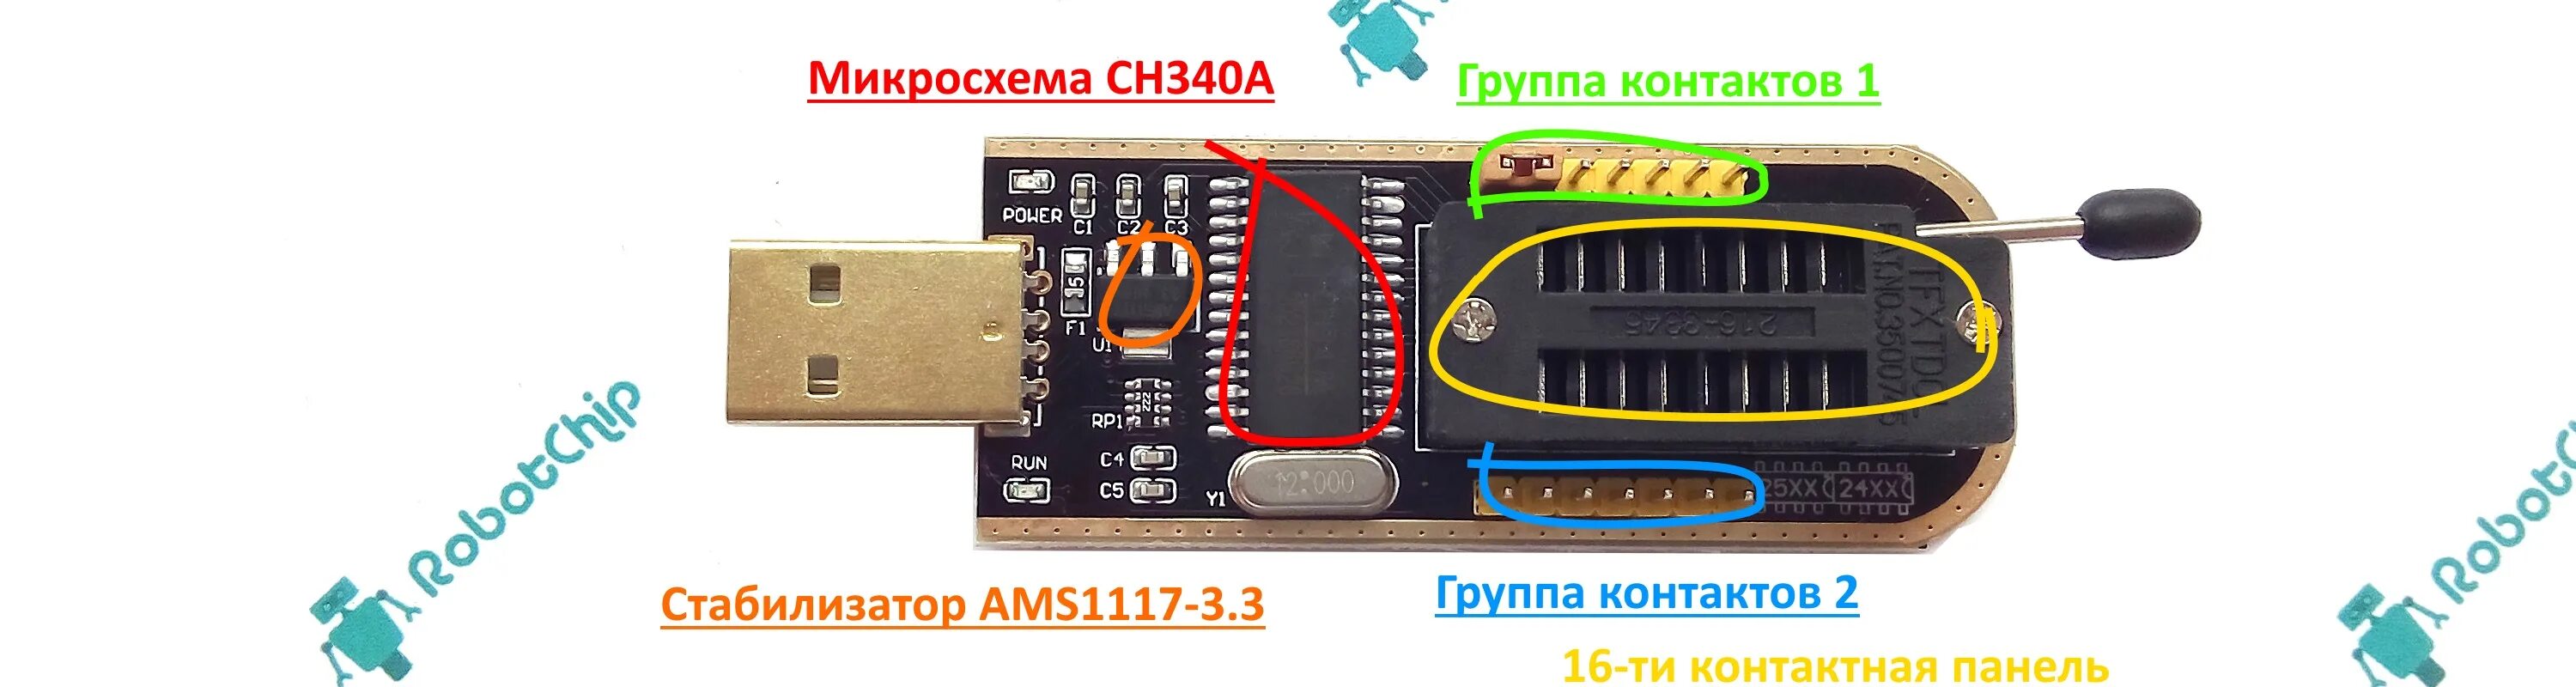 USB программатор ch341a. Ch341a Mini Programmer. Программатор для микросхем ch341a. Ch341a зеленая плата.